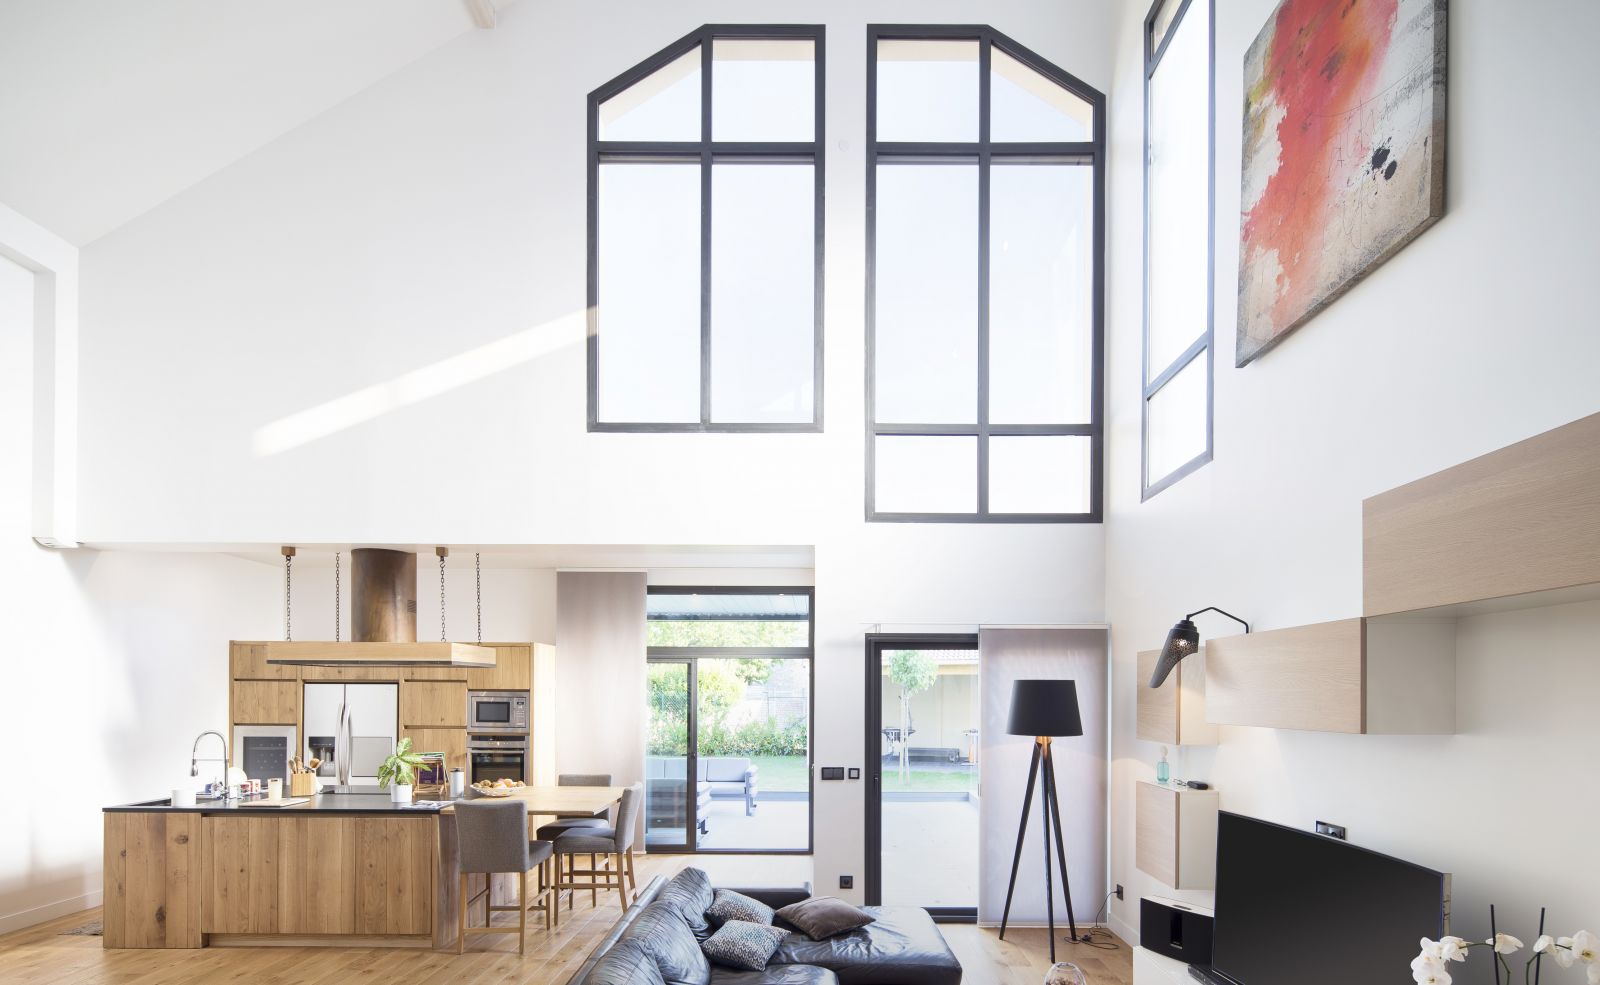 Fenêtres et baies vitrées aluminium pour un intérieur au style design - Komilfo